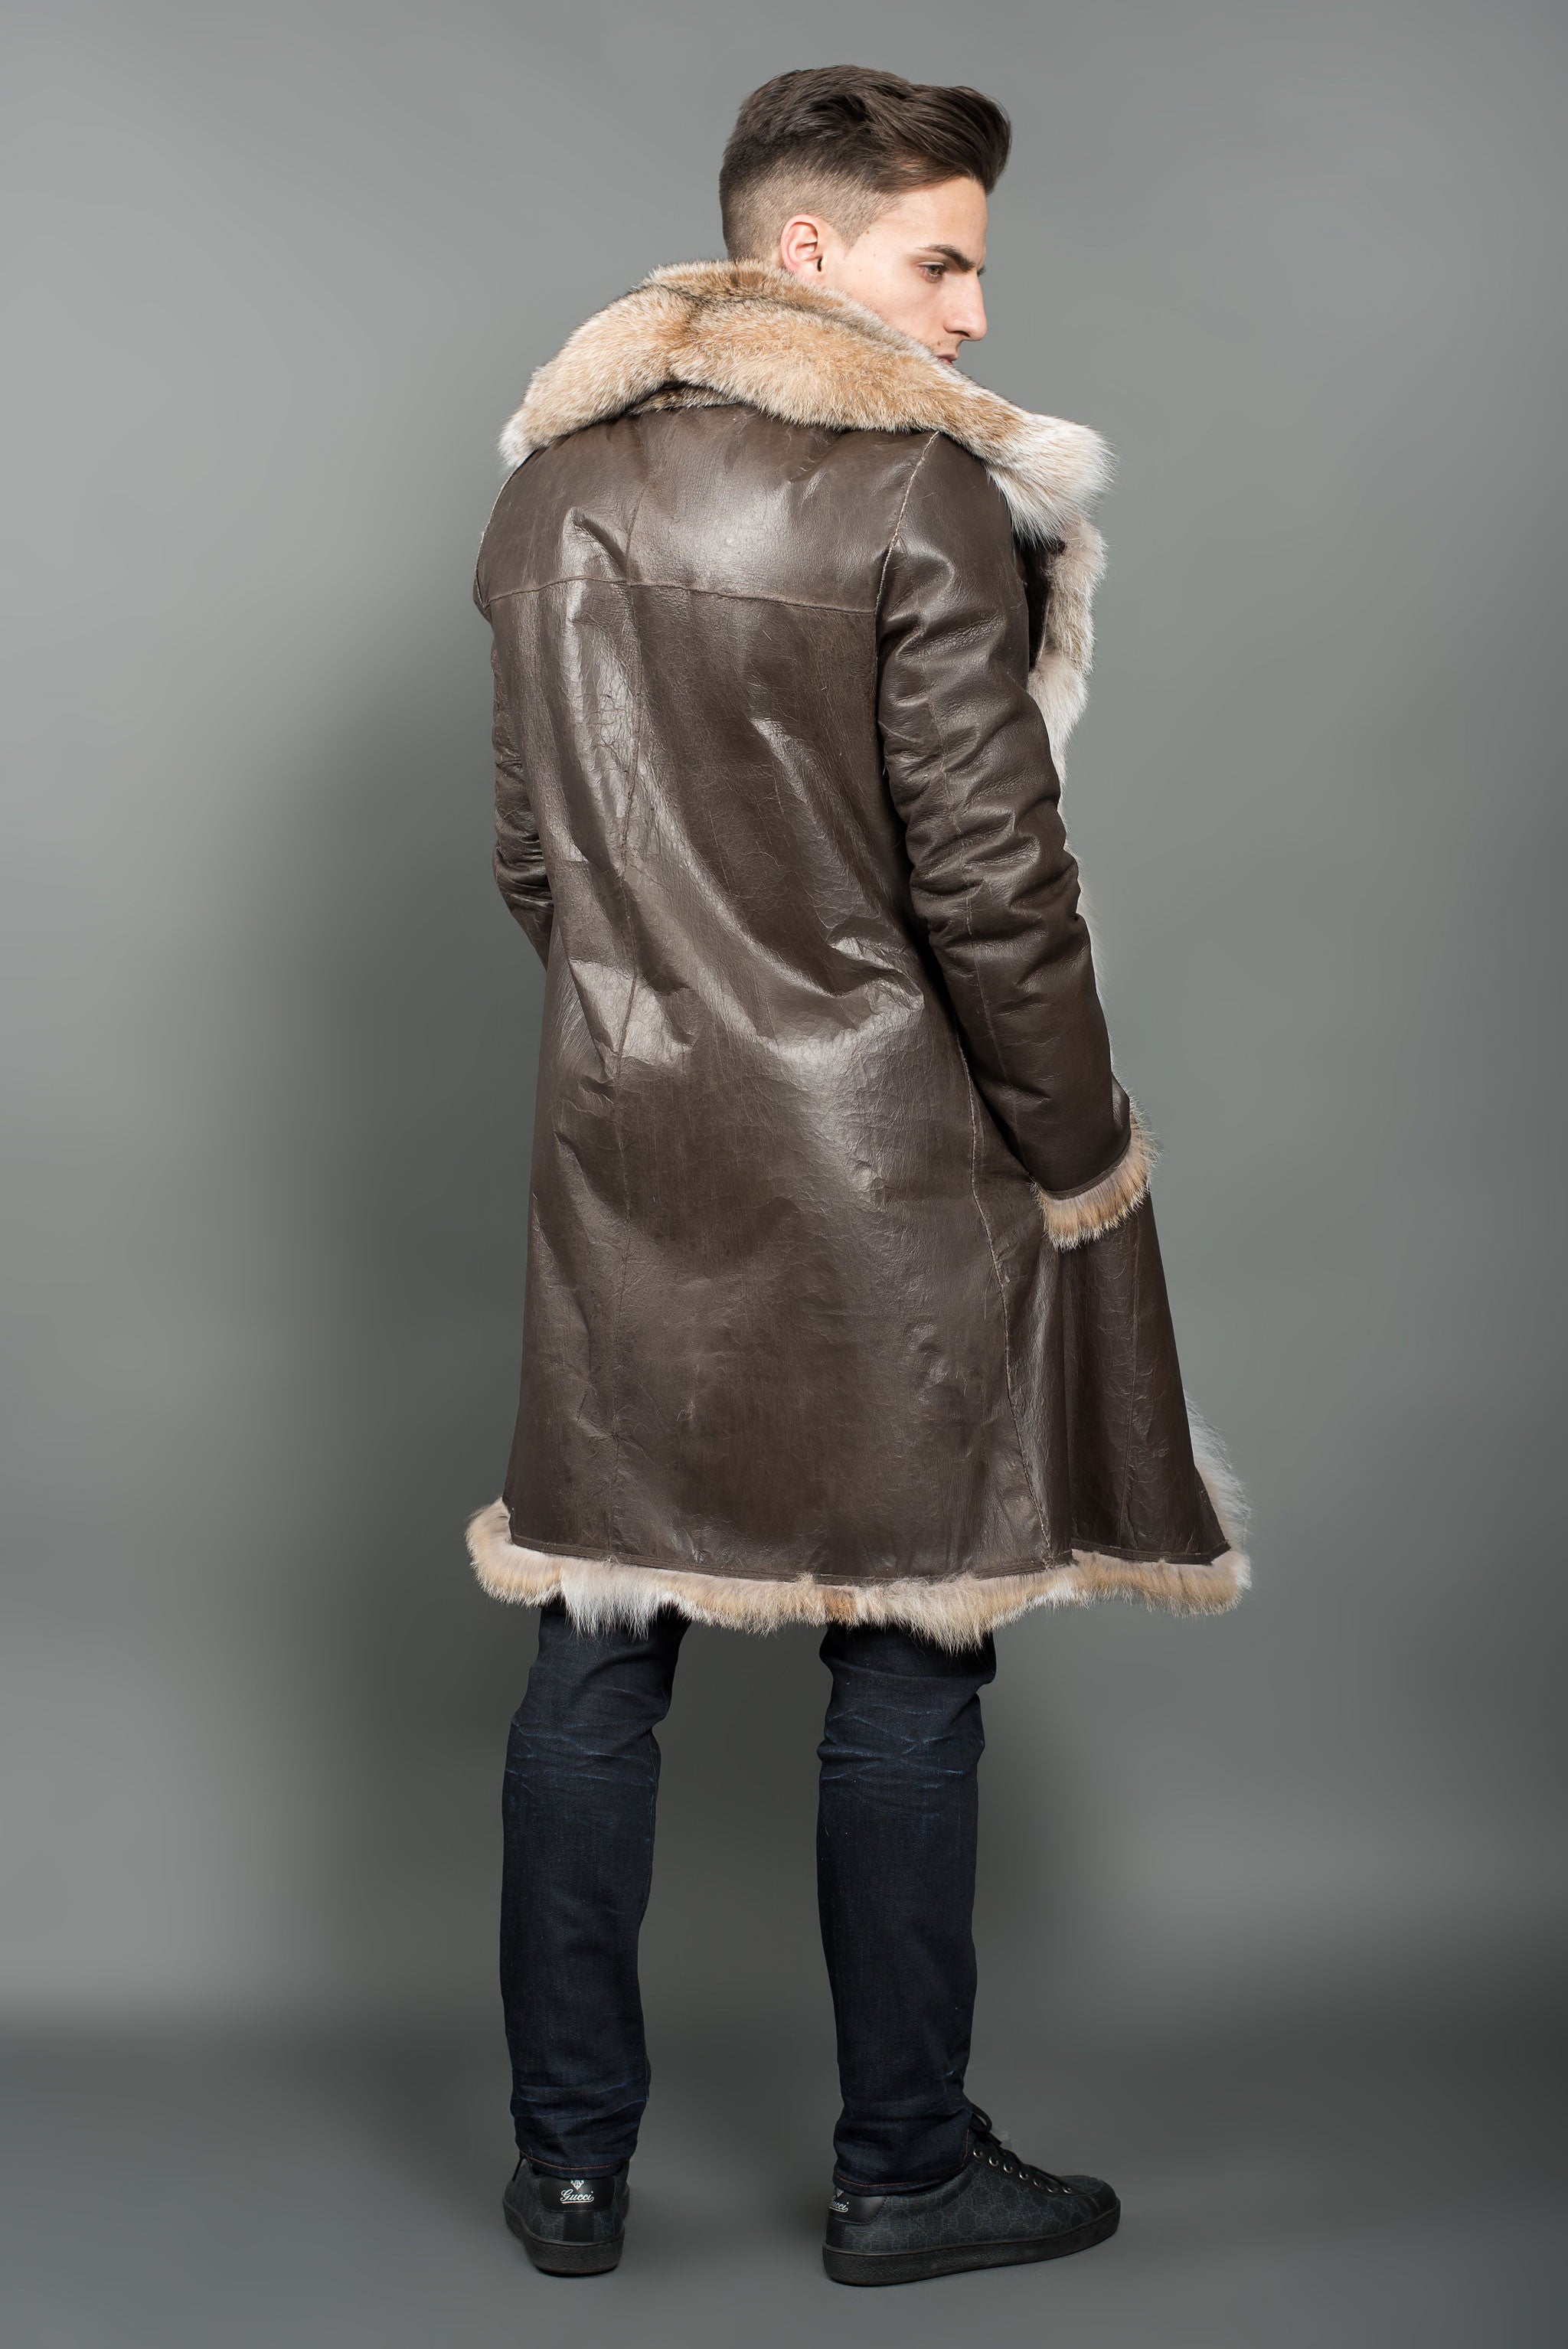 mink coat mens gucci, OFF 76%,Buy!